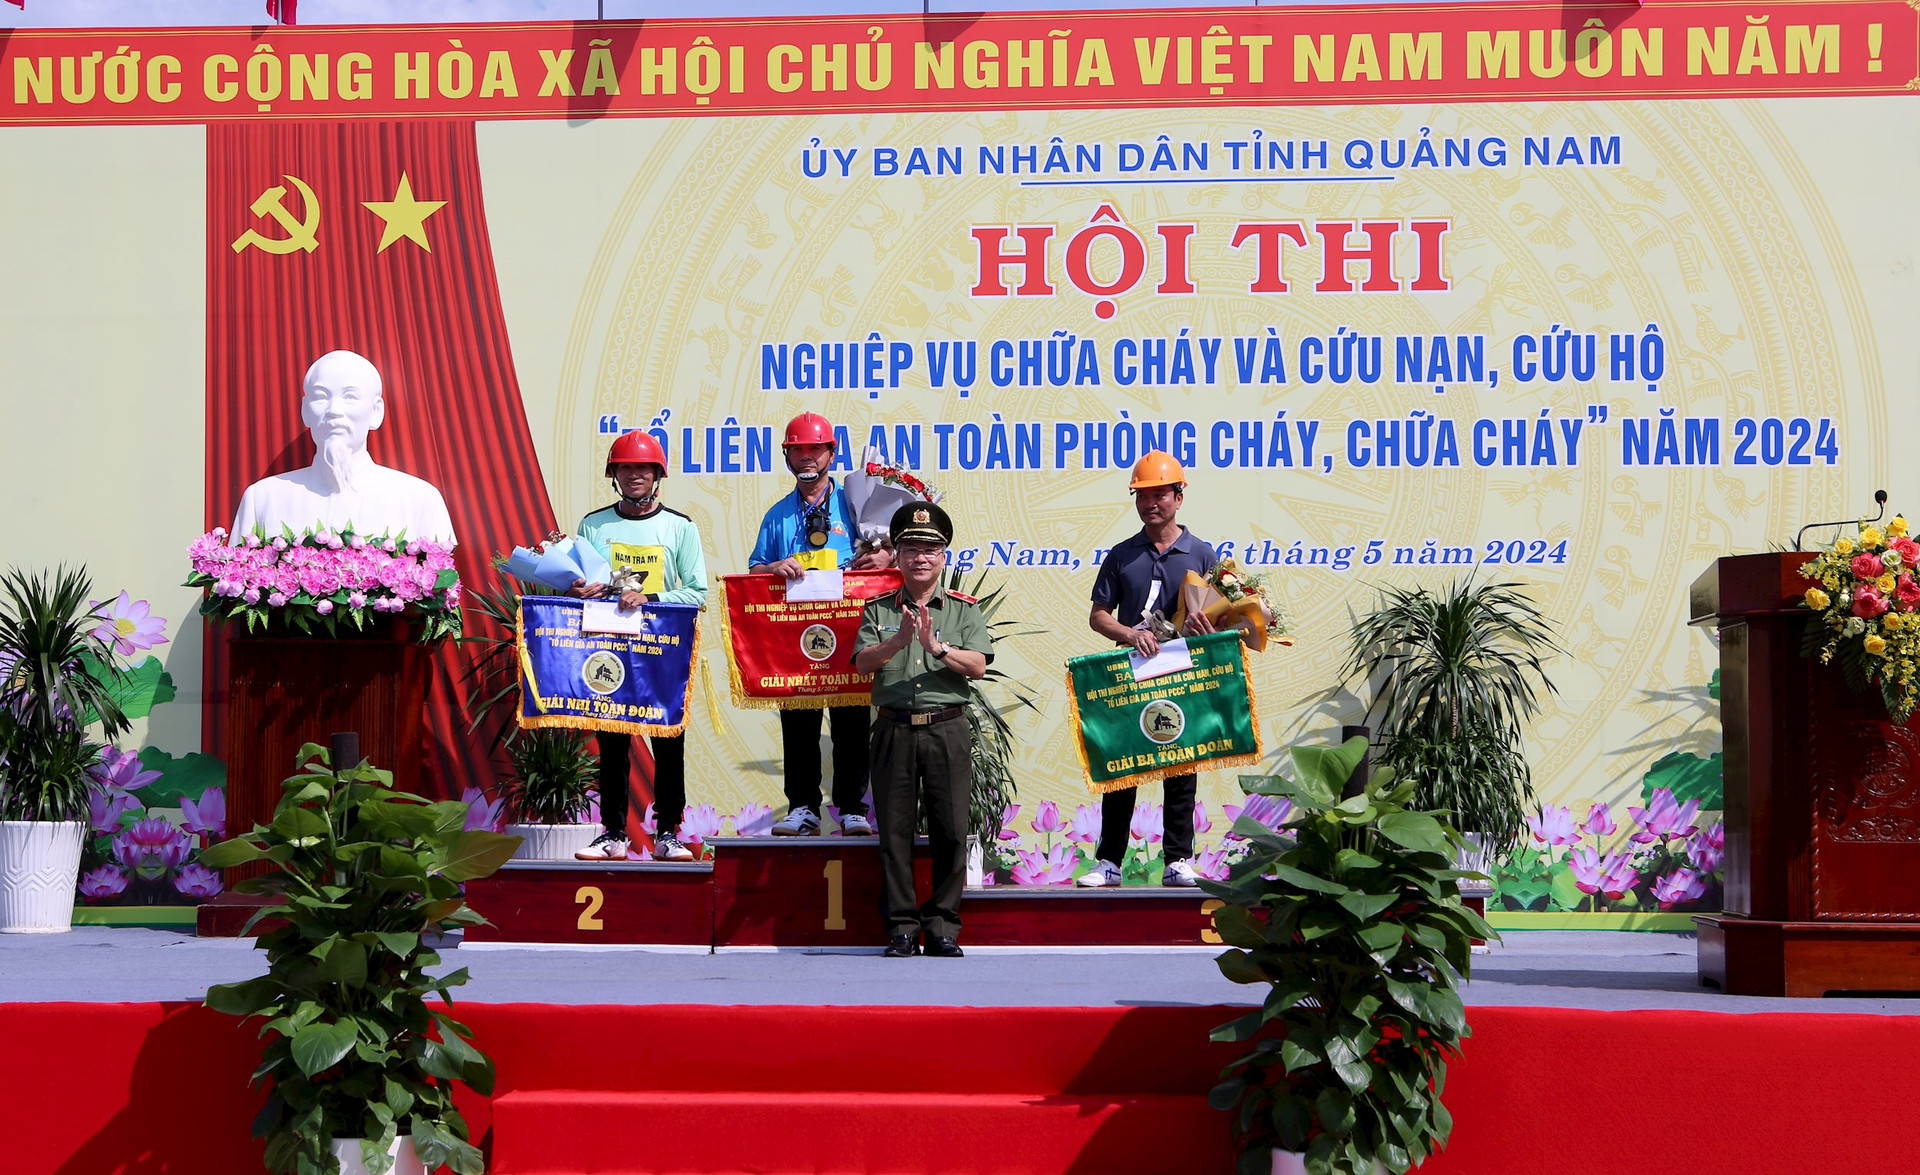 Thiếu tướng Nguyễn Đức Dũng trao giải toàn đoàn cho các đội thi xuất sắc nhất. Ảnh: T.C